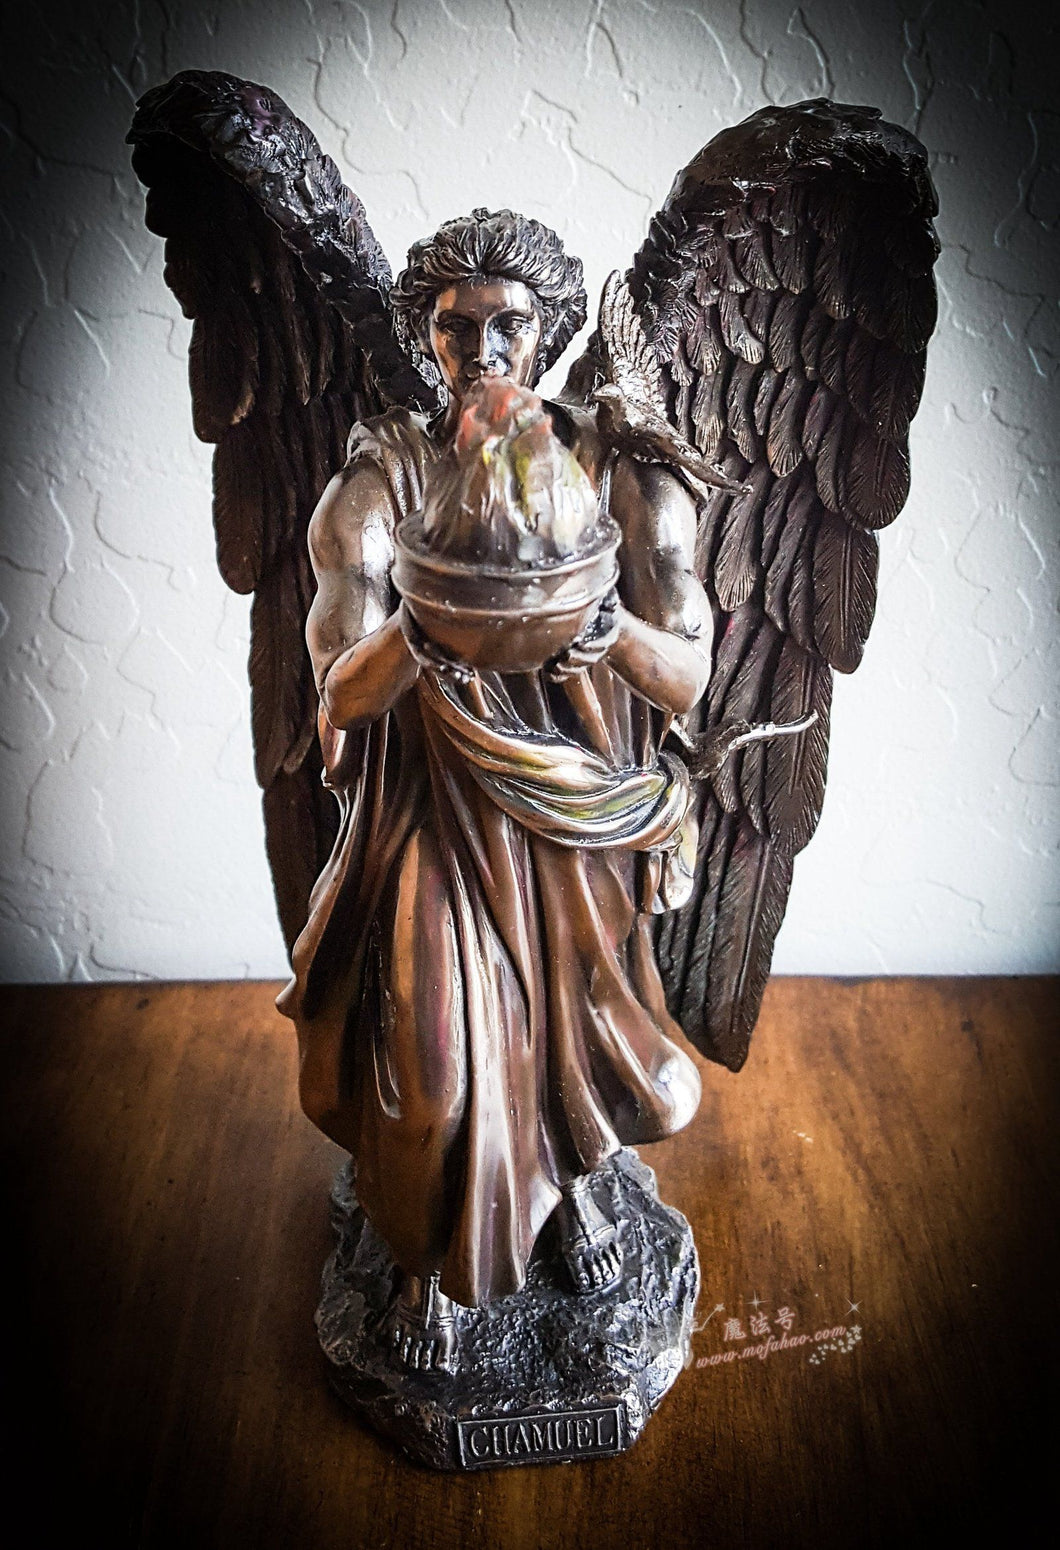 能量雕像系列~*大天使卡麦尔 明确目标 带来和平 修复人际关系 堕落天使雕像